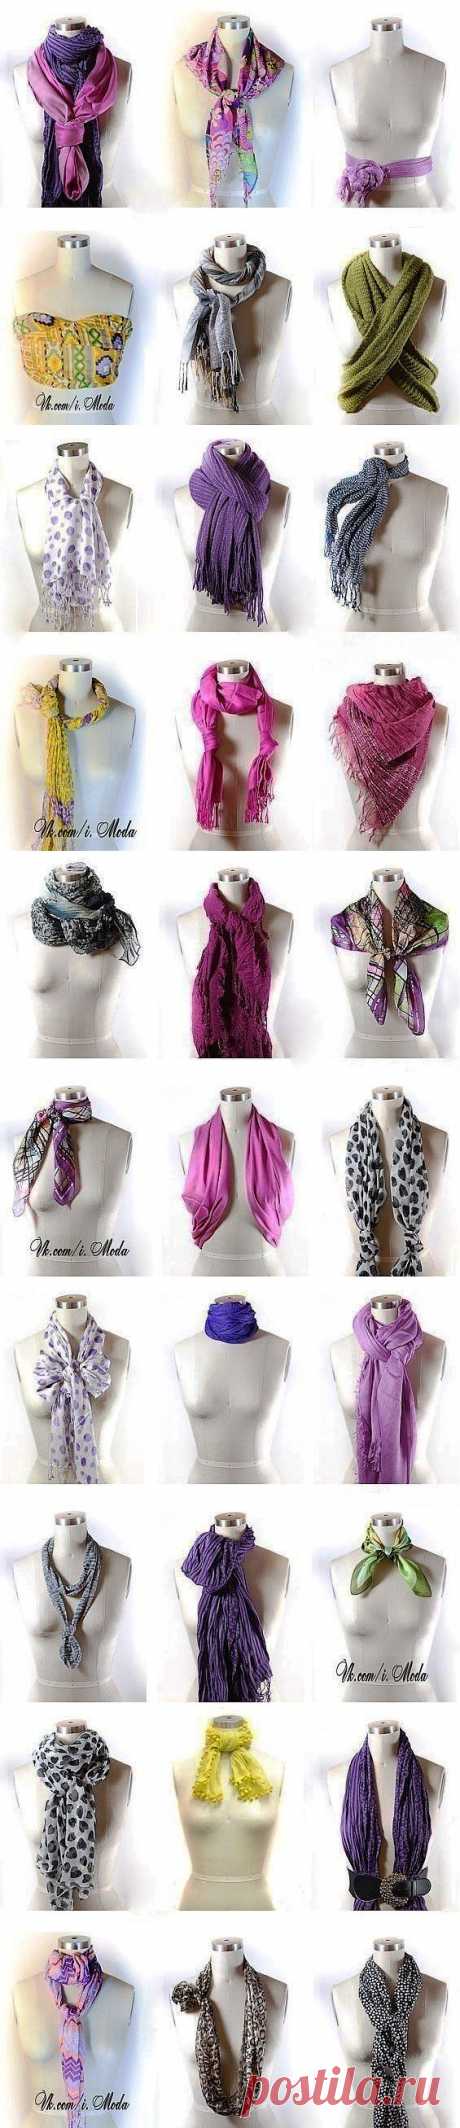 (+1) - Разные способы завязать шарф. | КРАСОТА